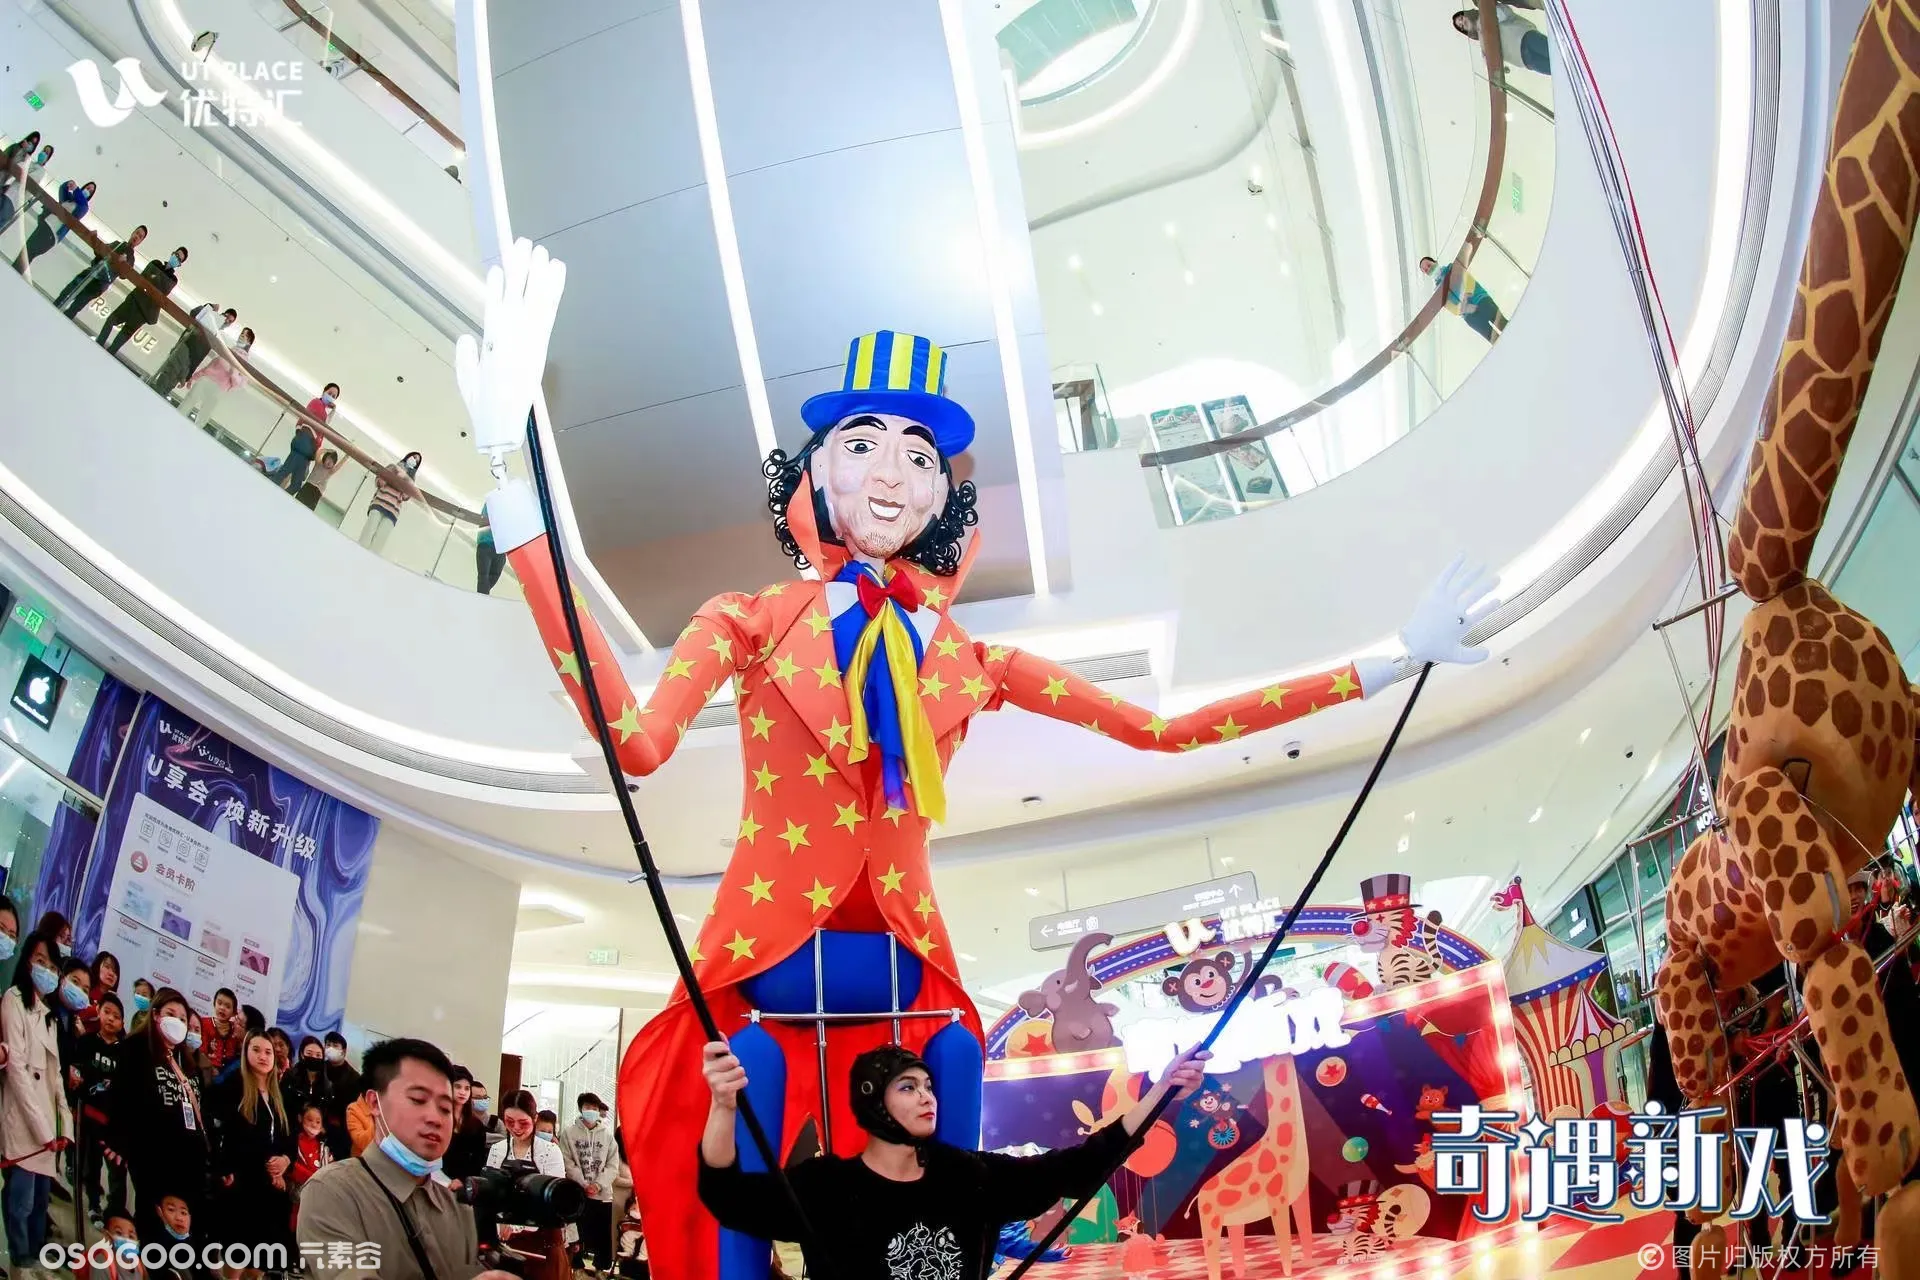  大型提线木偶 游乐园嘉年华 创意巡游 歌舞剧演出